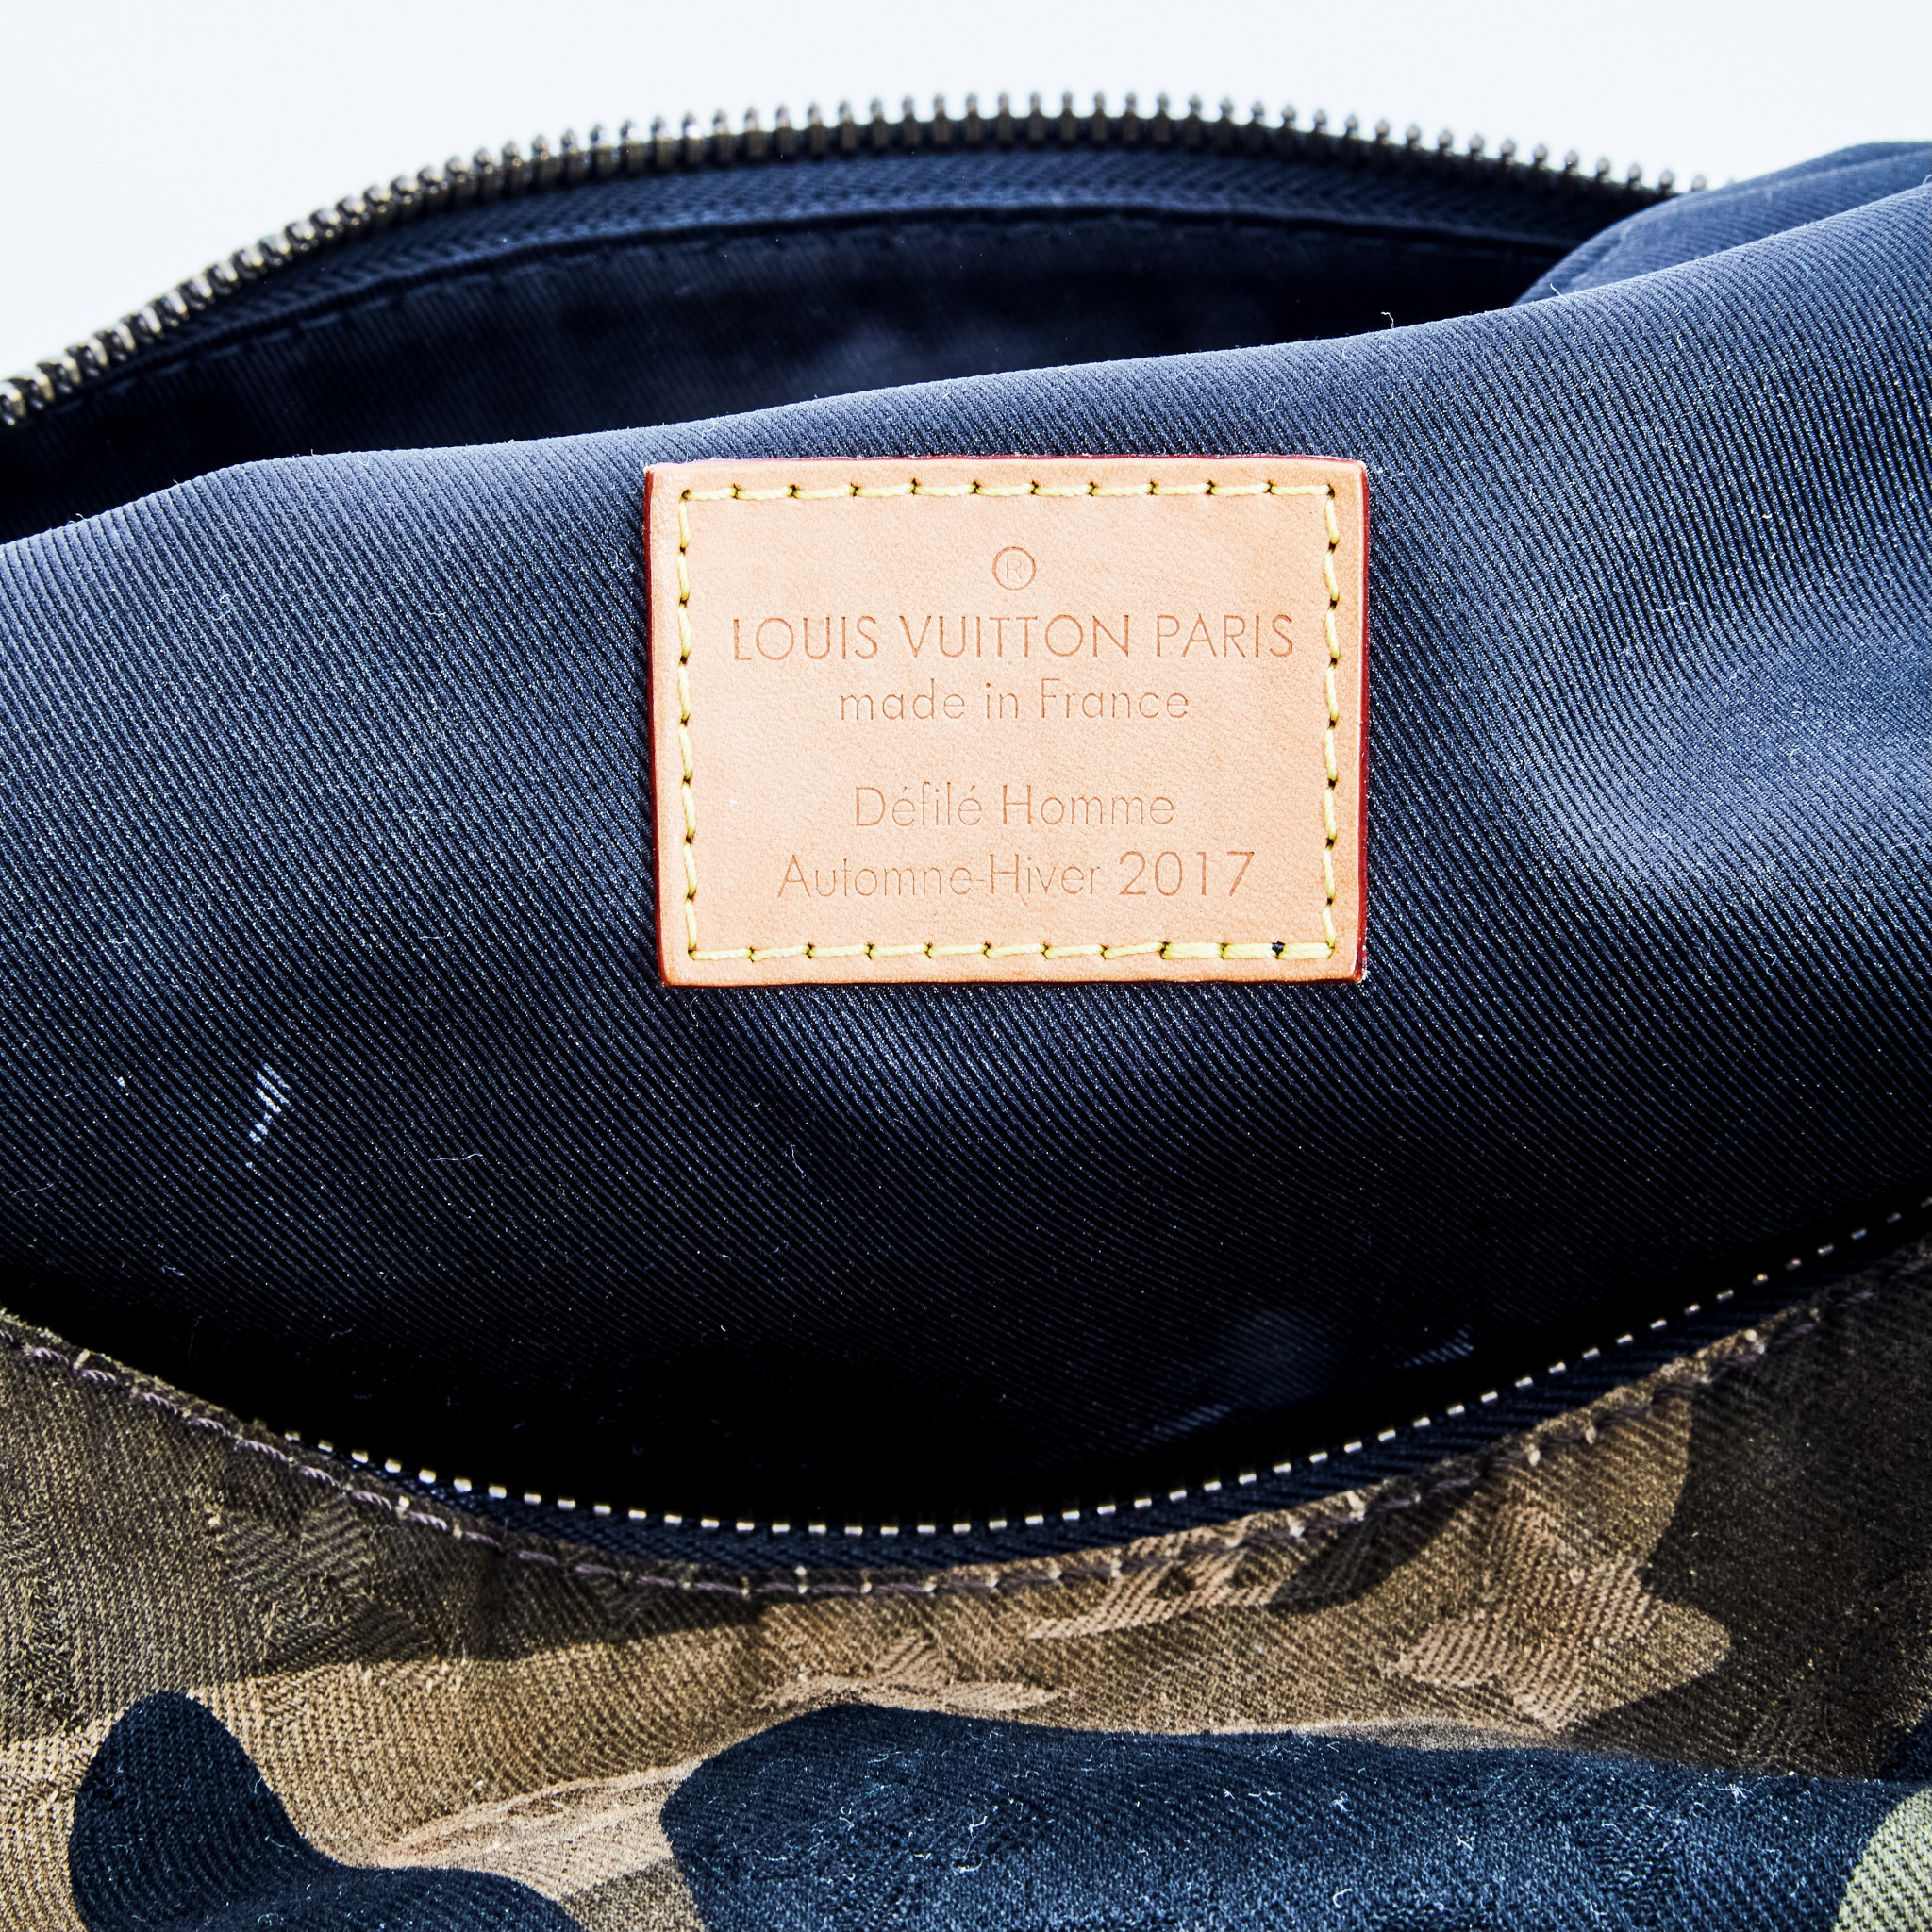 Louis Vuitton x Supreme Apollo Backpack Monogram Camo